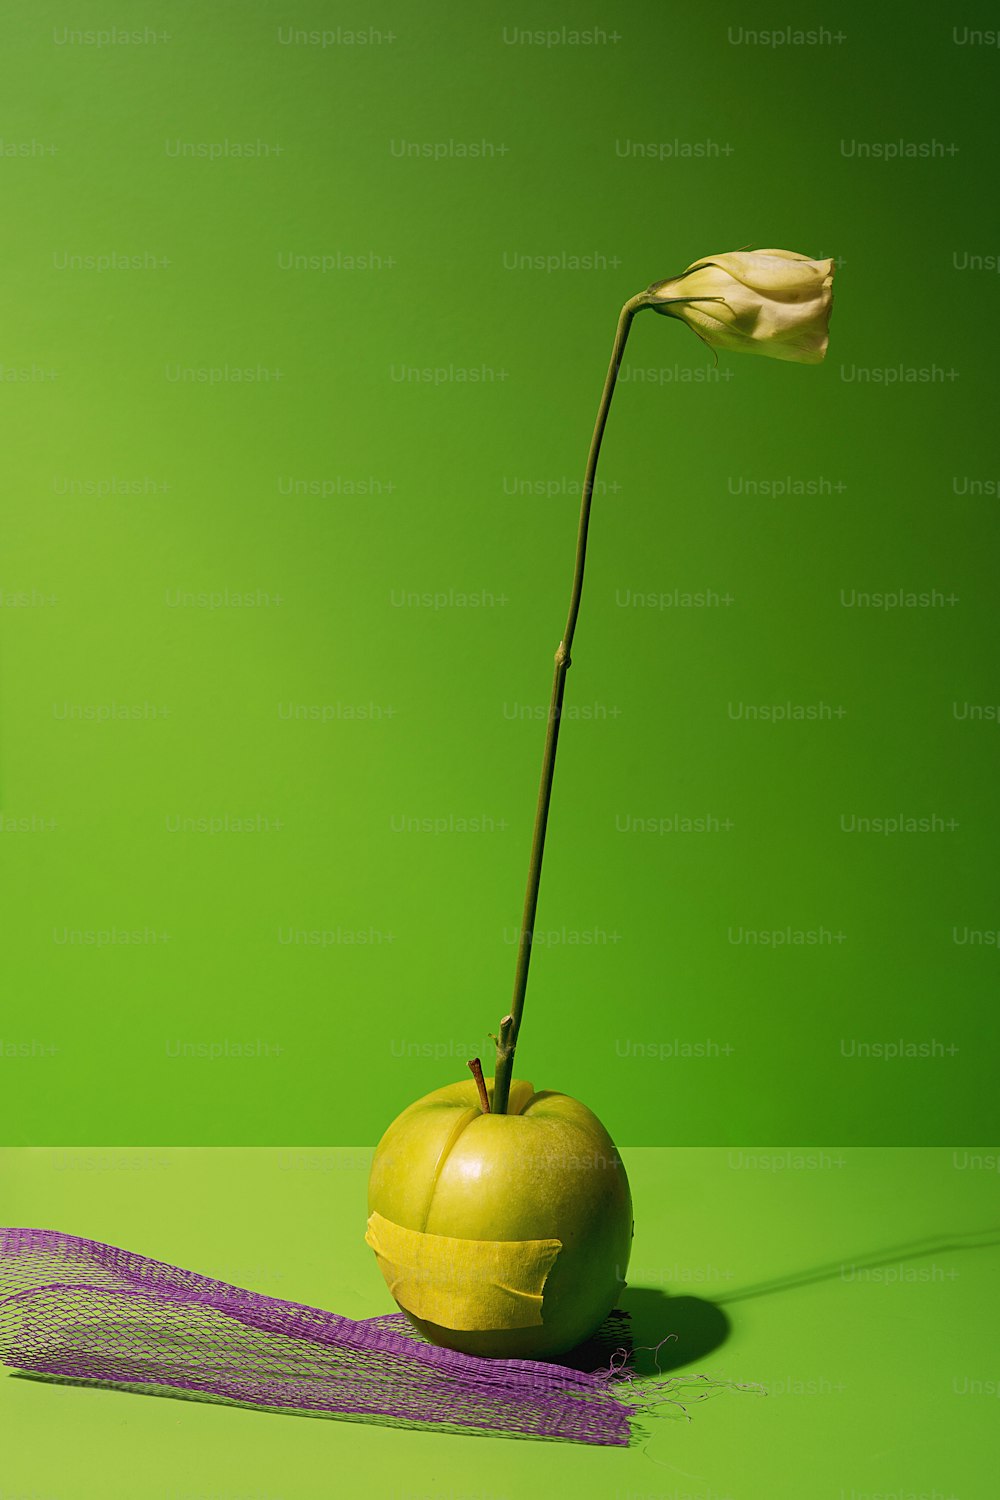 uma maçã amarela com uma flor saindo dela